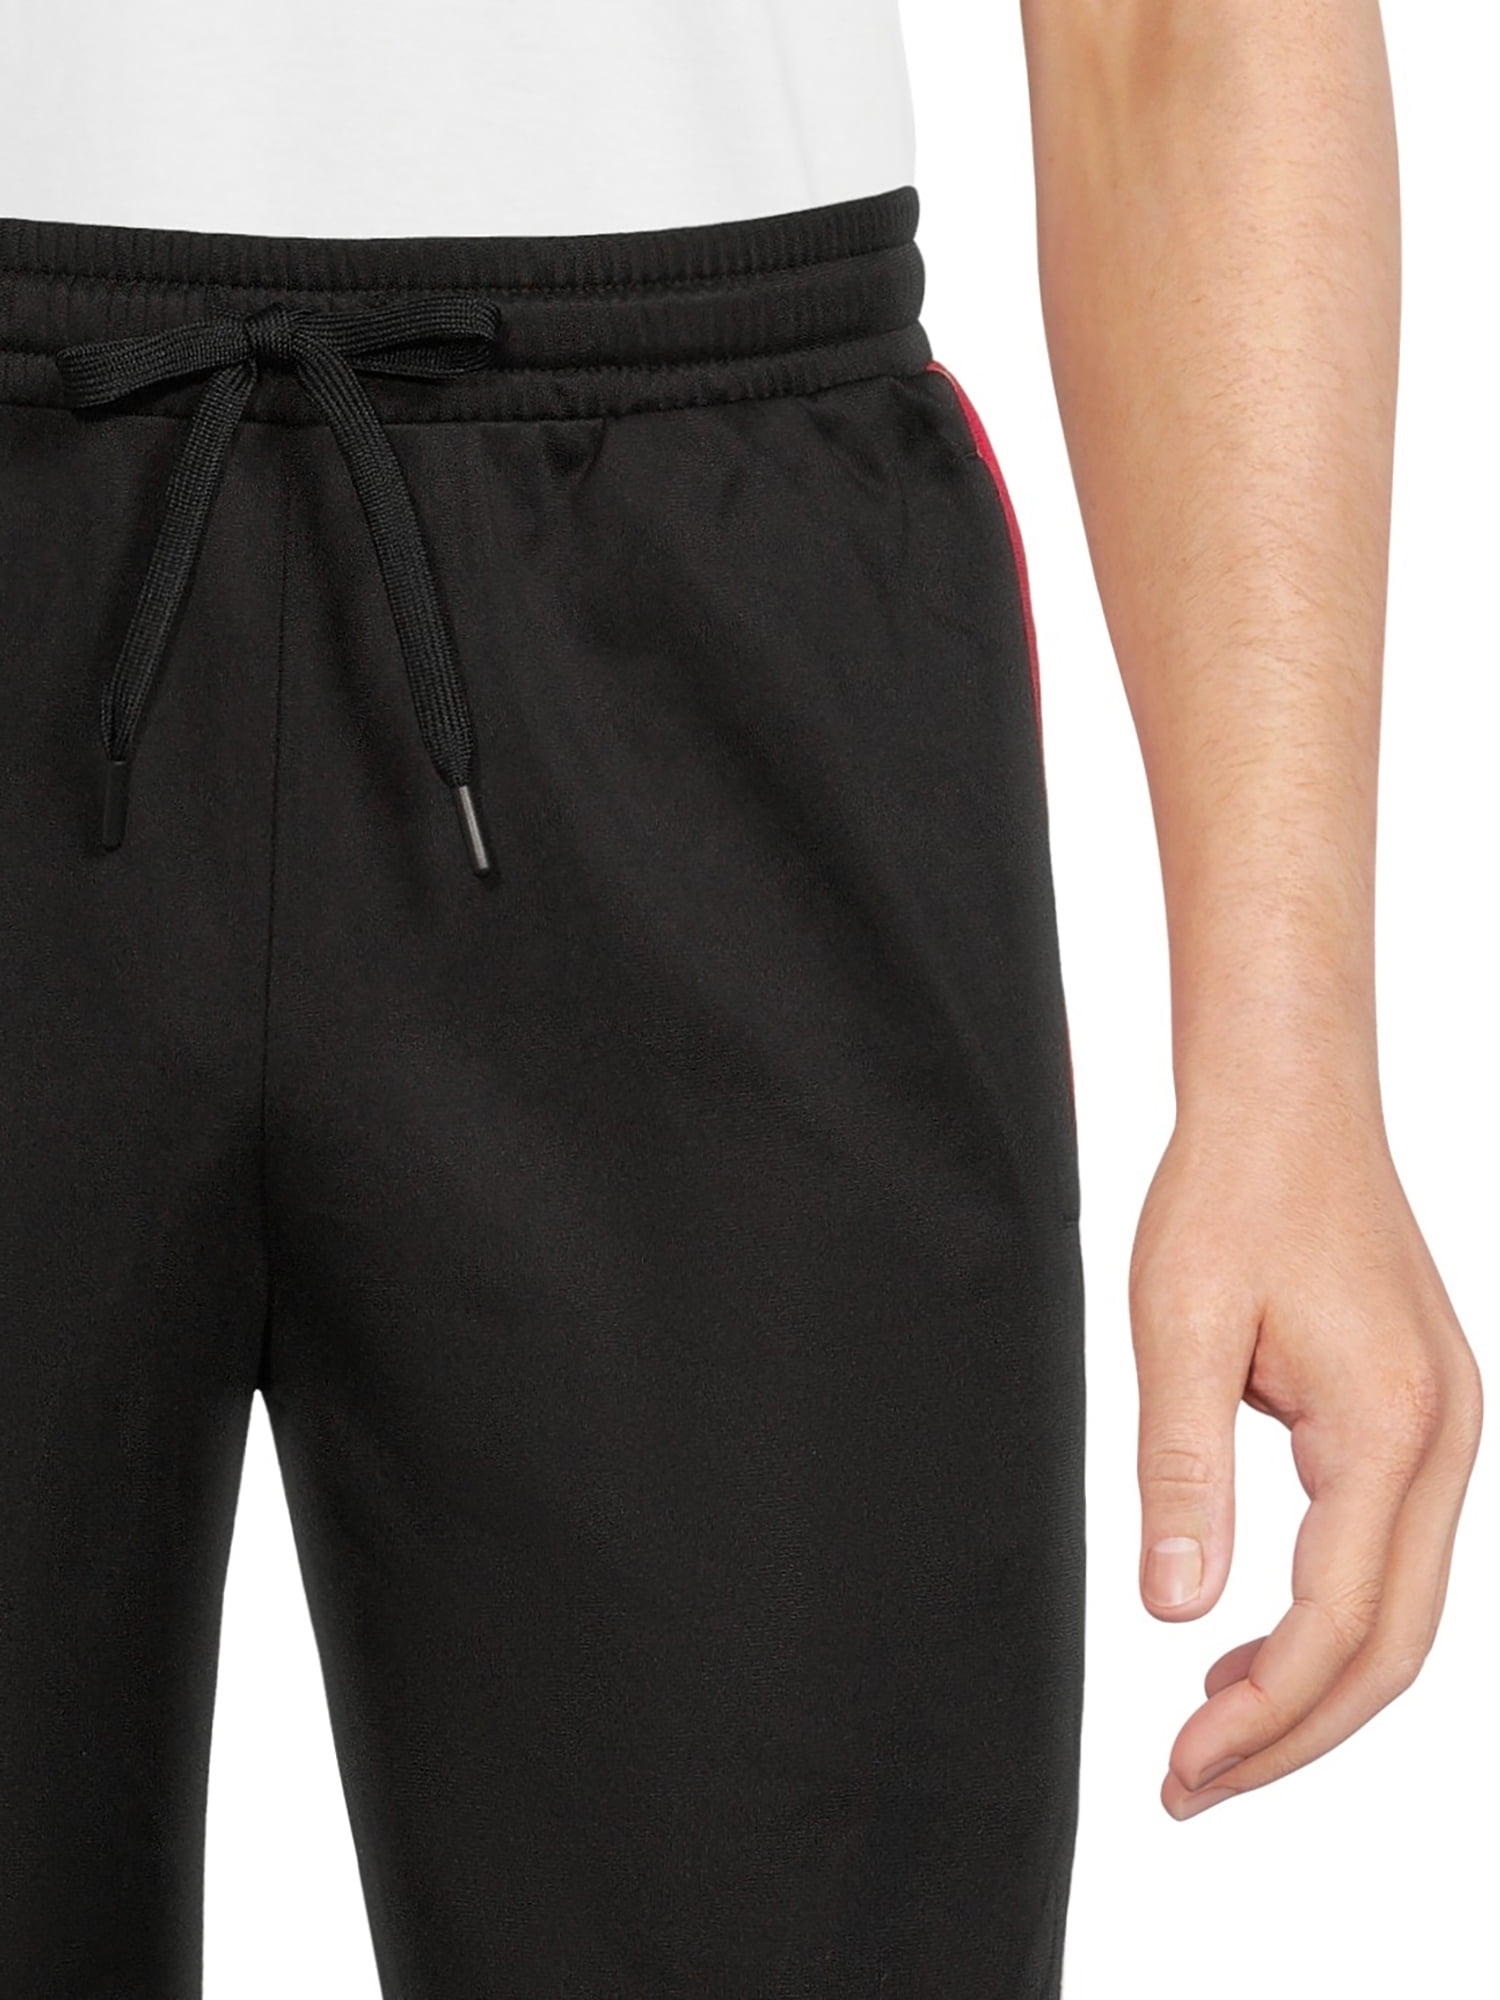 Weekender Athletic Pants, Moisture Wicking, Anti Odor, 29